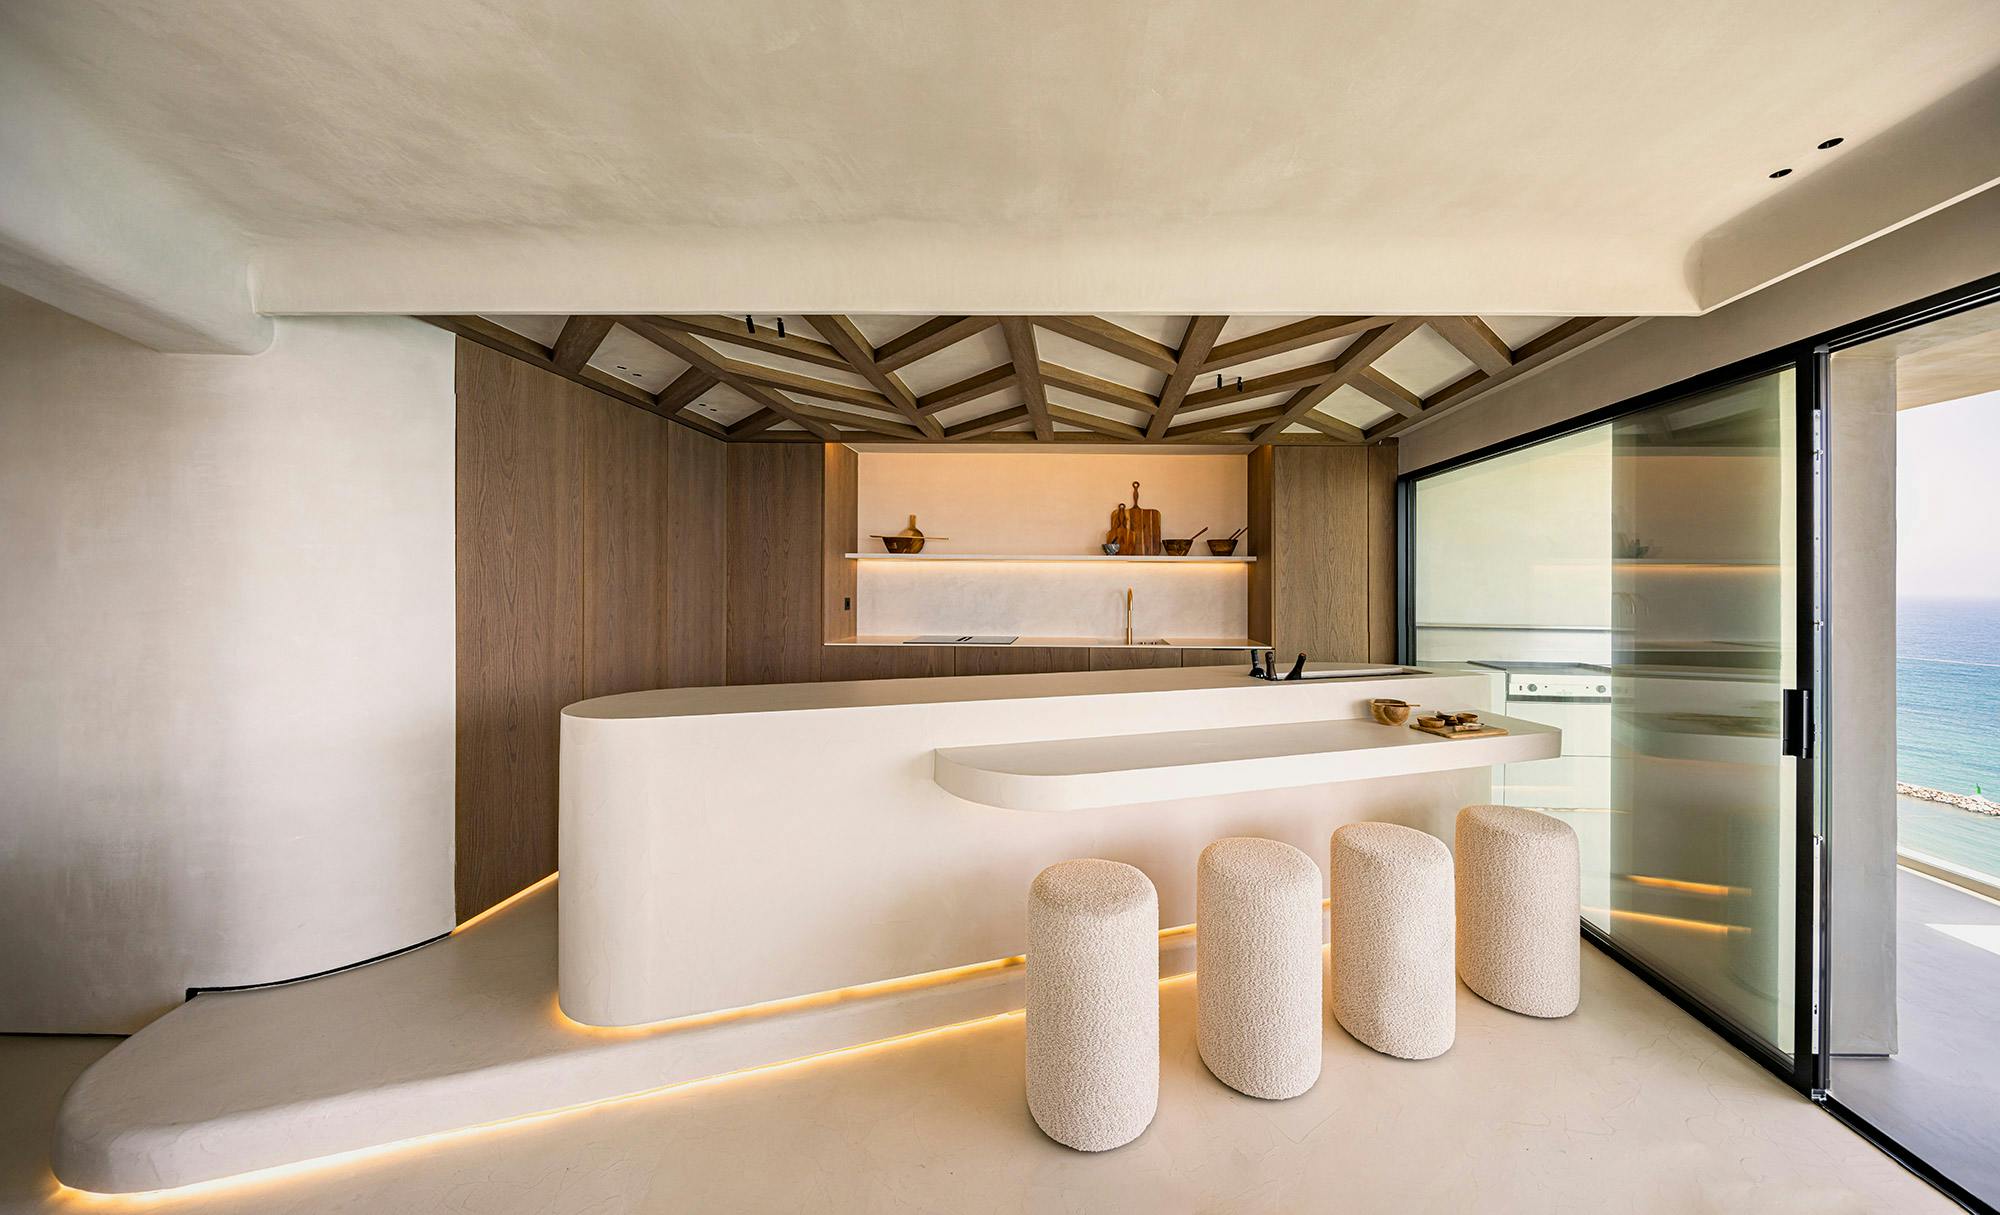 Numero immagine 39 della sezione corrente di Natural light partners with DKTN Marmorio to create an enveloping, sophisticated bathroom di Cosentino Italia